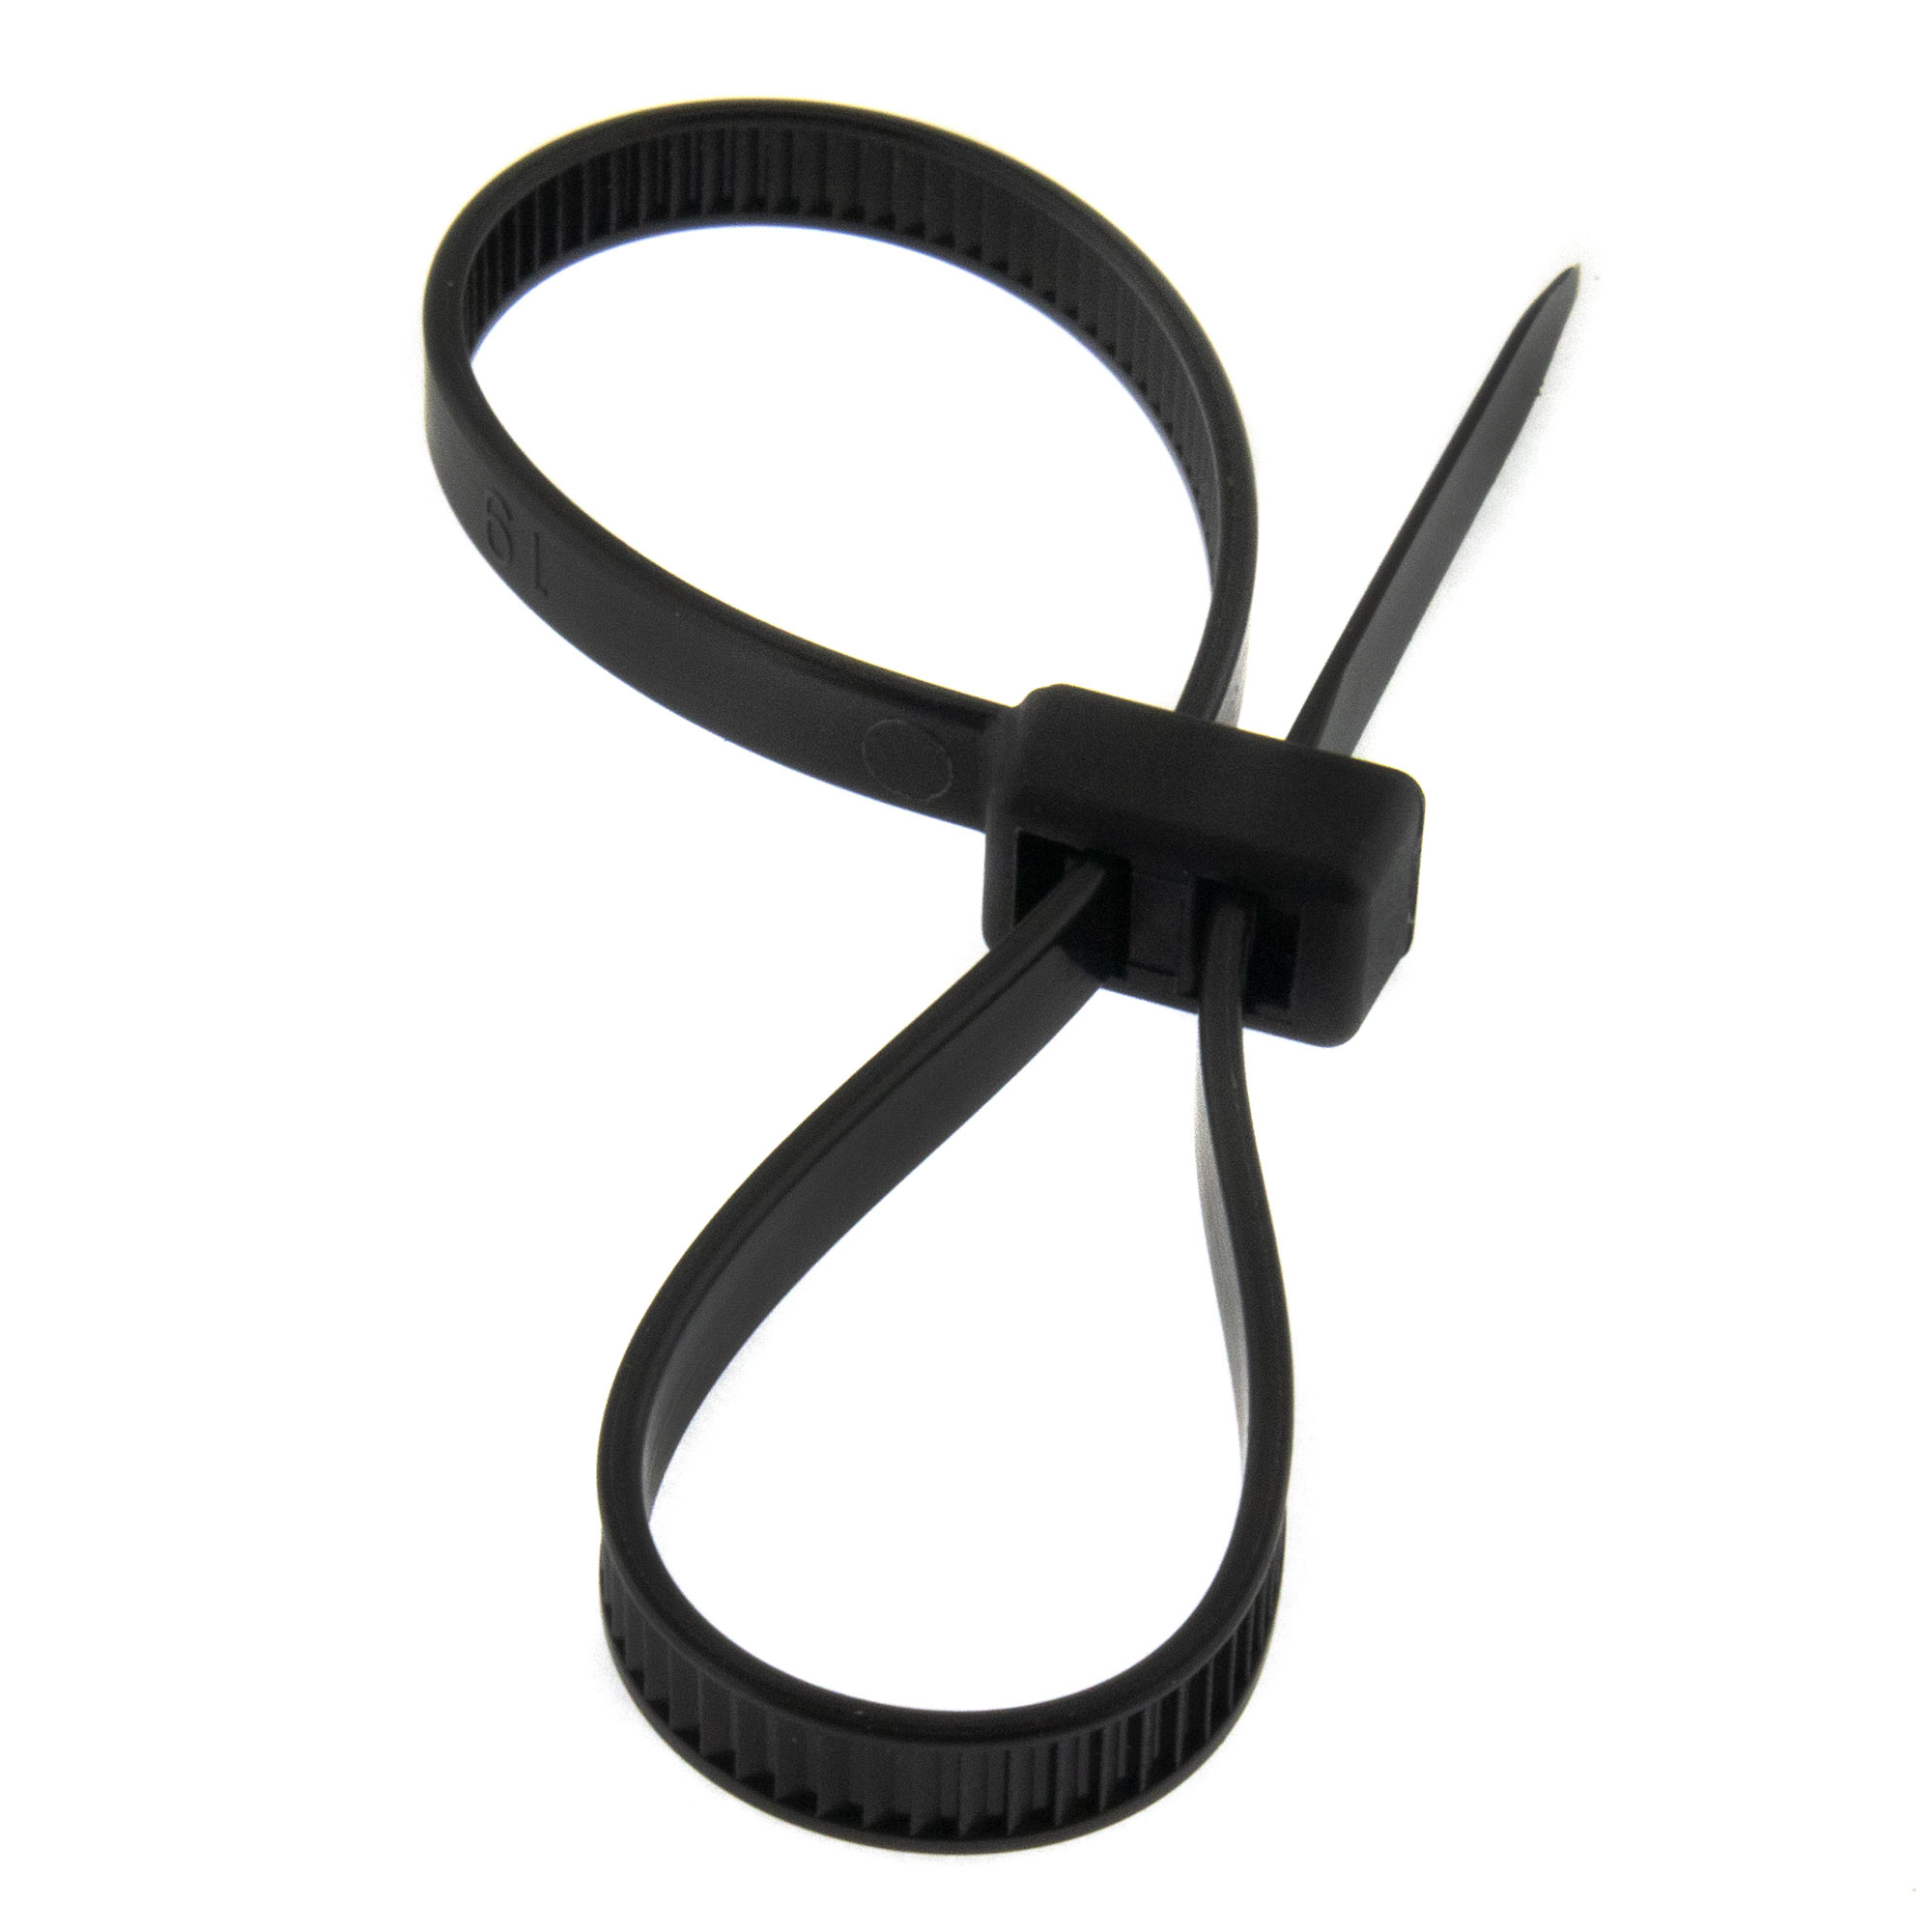 Cable tie double head 200 x 4,8mm, black, 100PCS